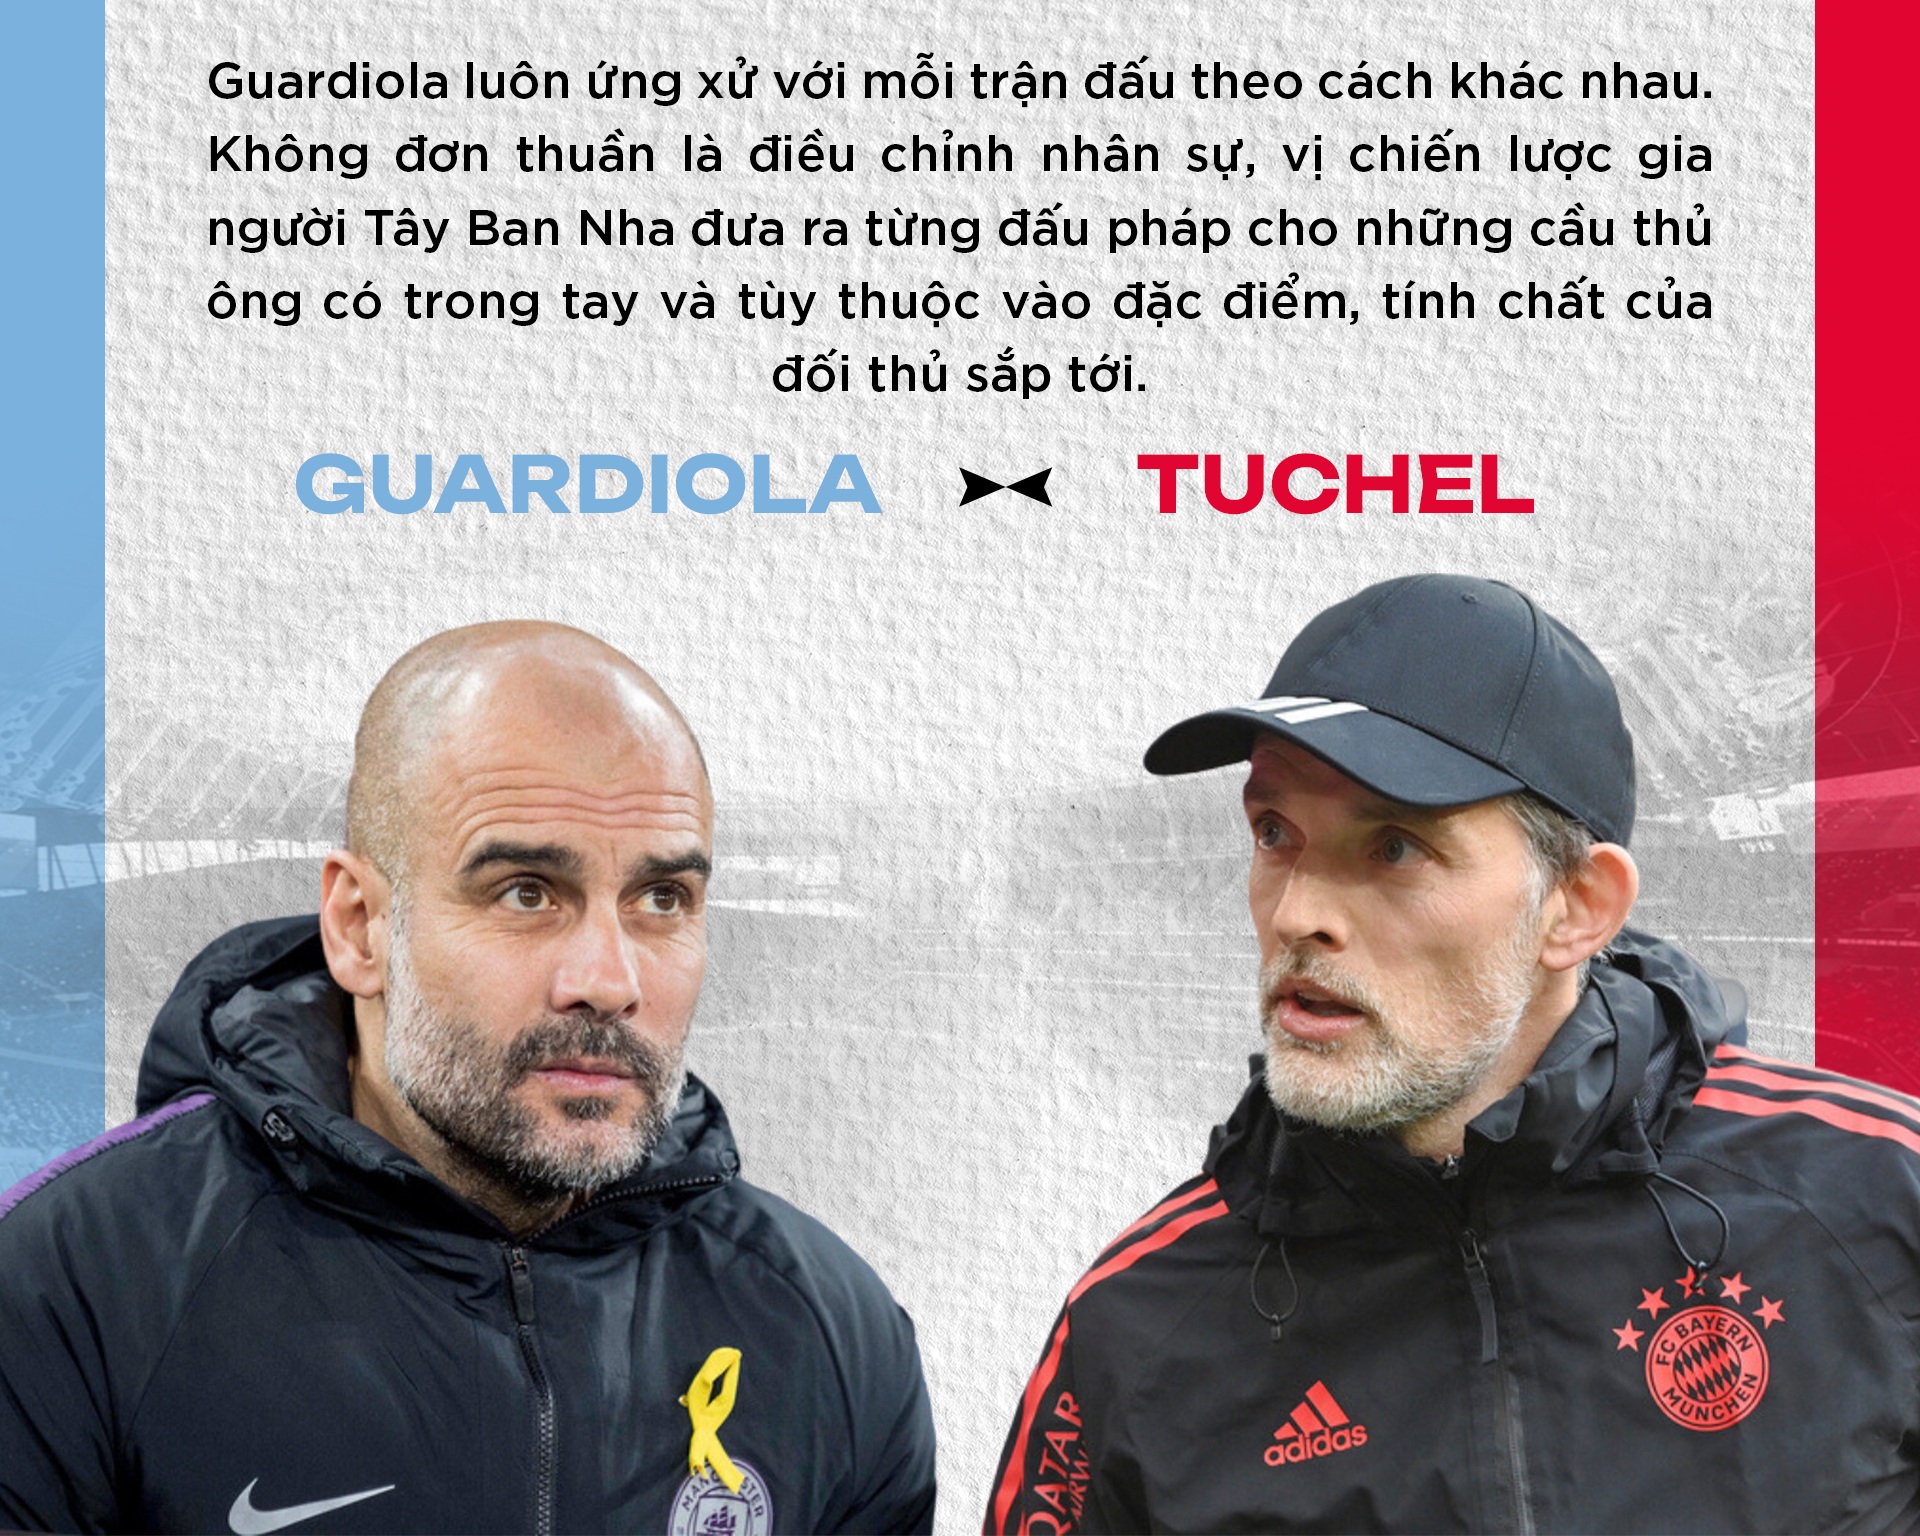 Tuchel đối đầu Guardiola: Đấu trí đỉnh cao bắt đầu từ lọ muối và hũ tiêu - 13